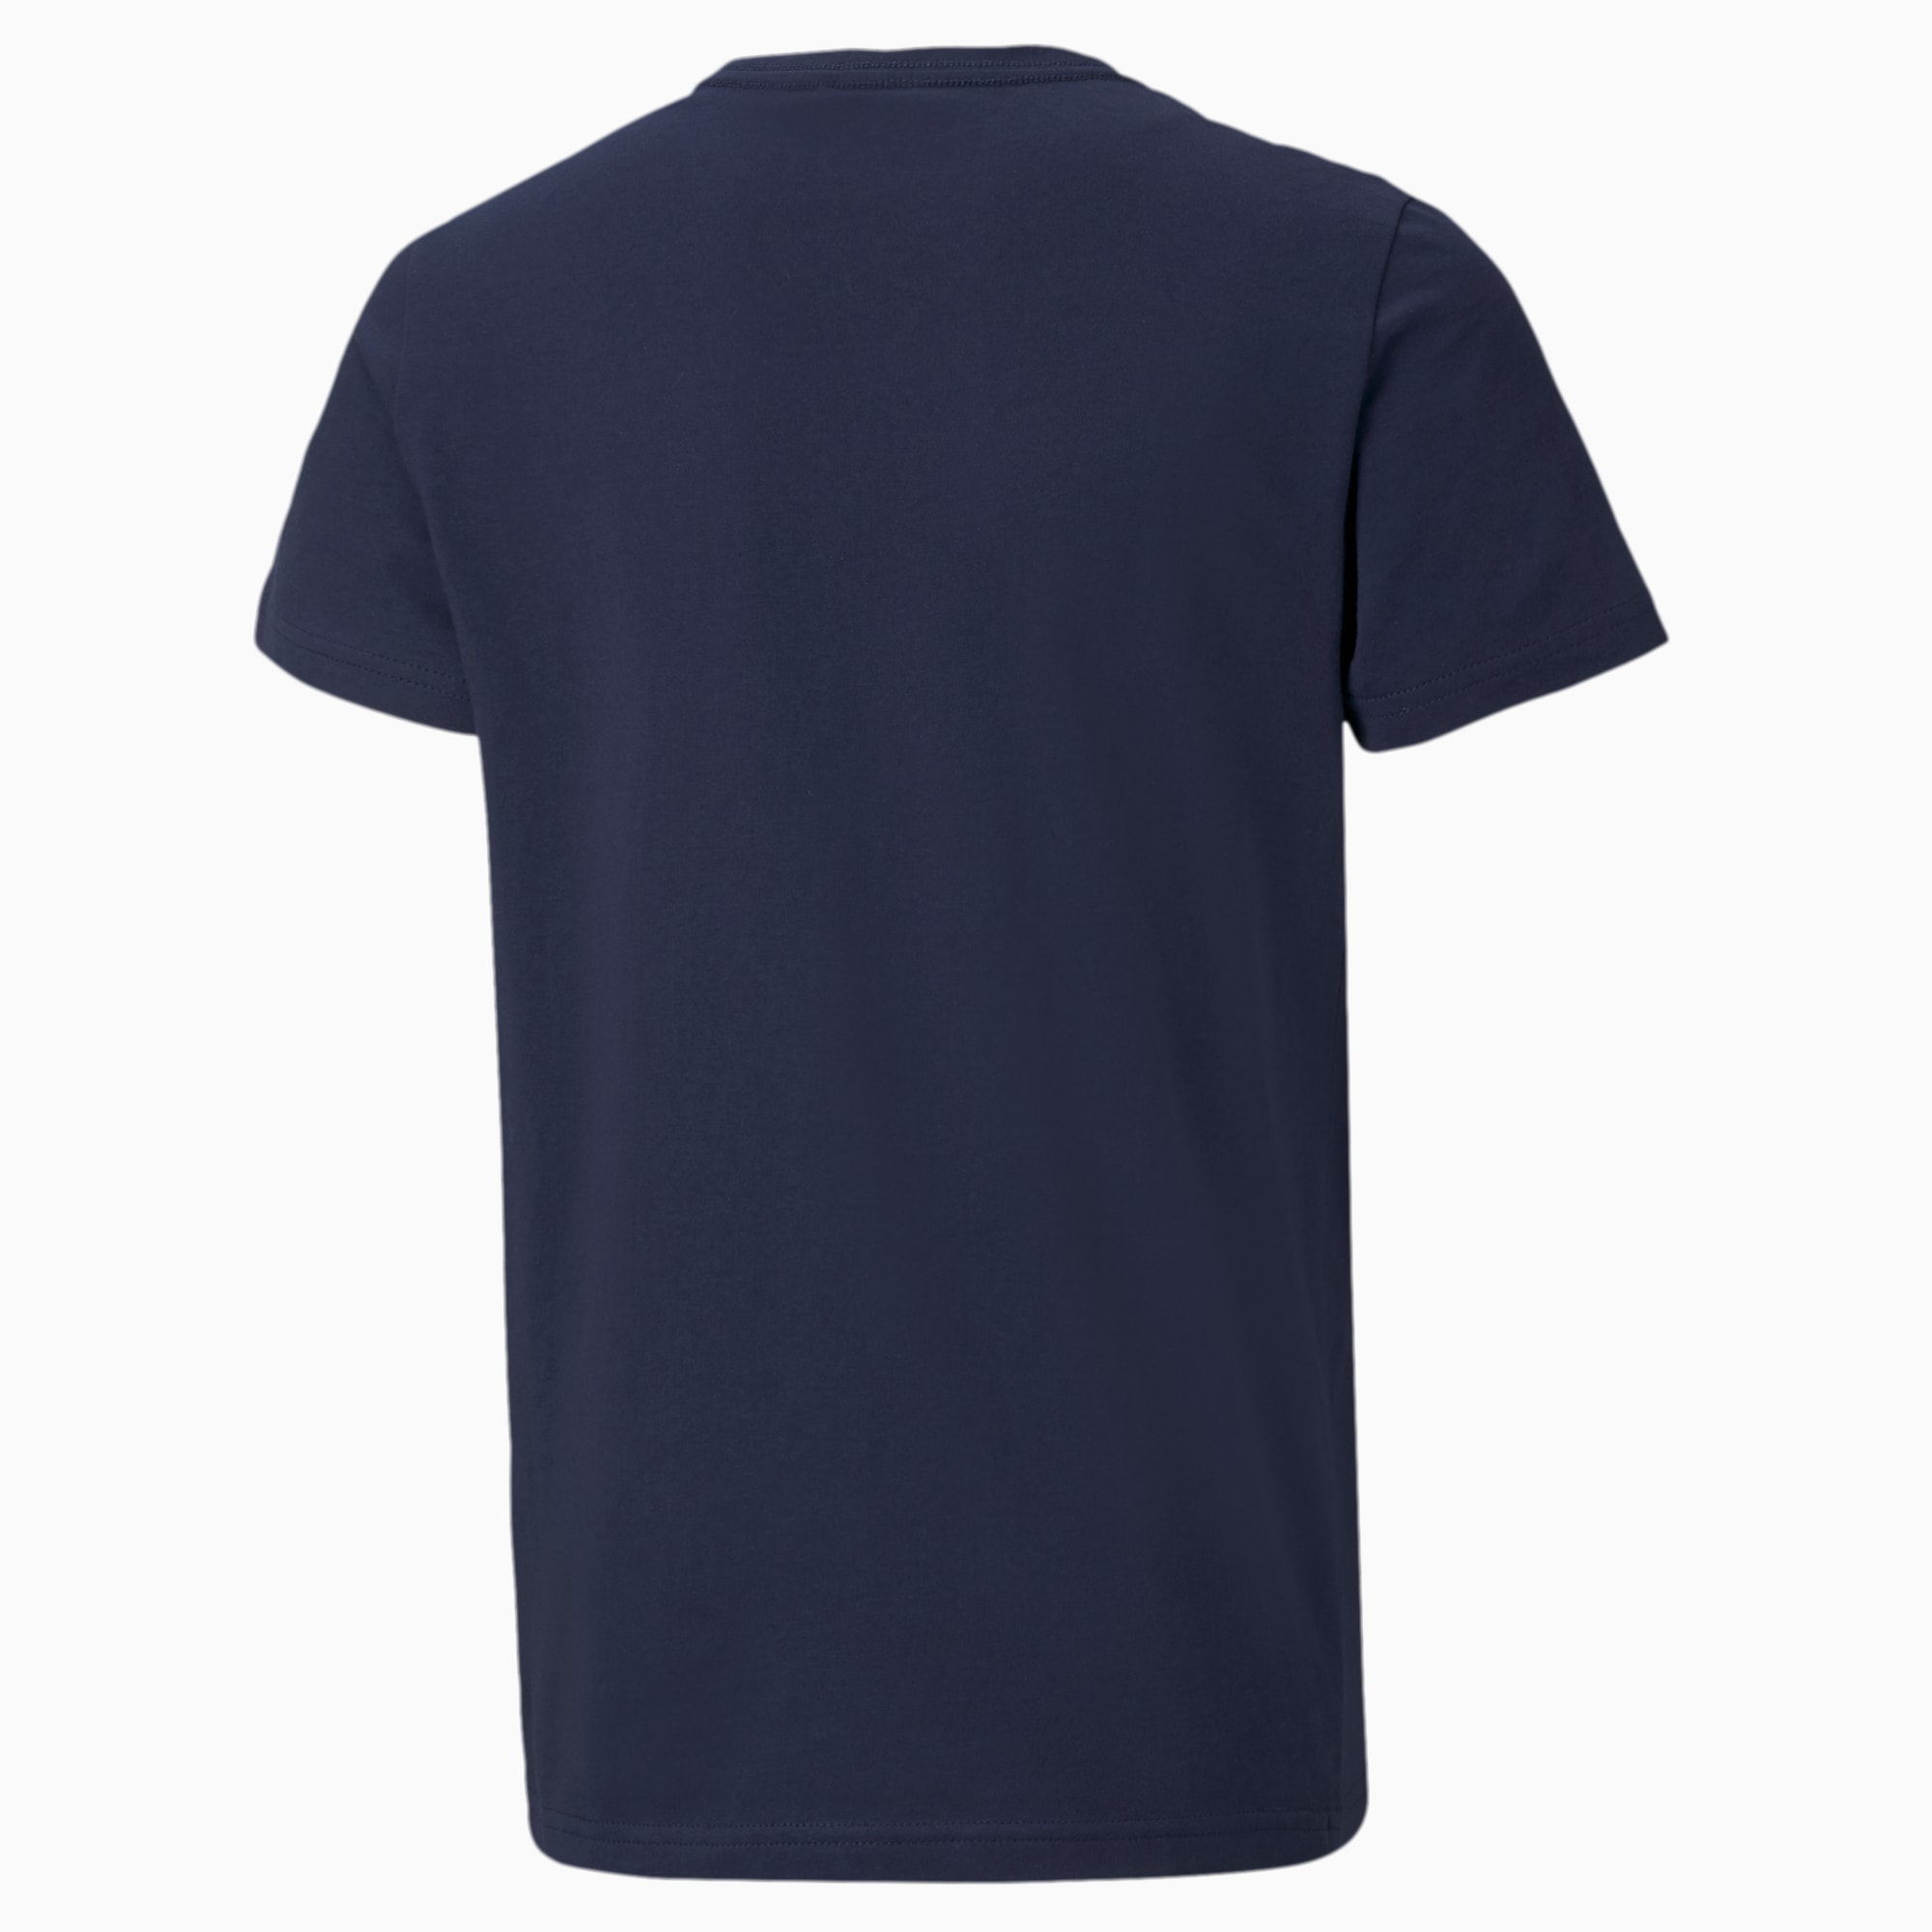 PUMA Essentials Jugend T-Shirt Mit Logo Für Kinder, Blau, Größe: 116, Kleidung